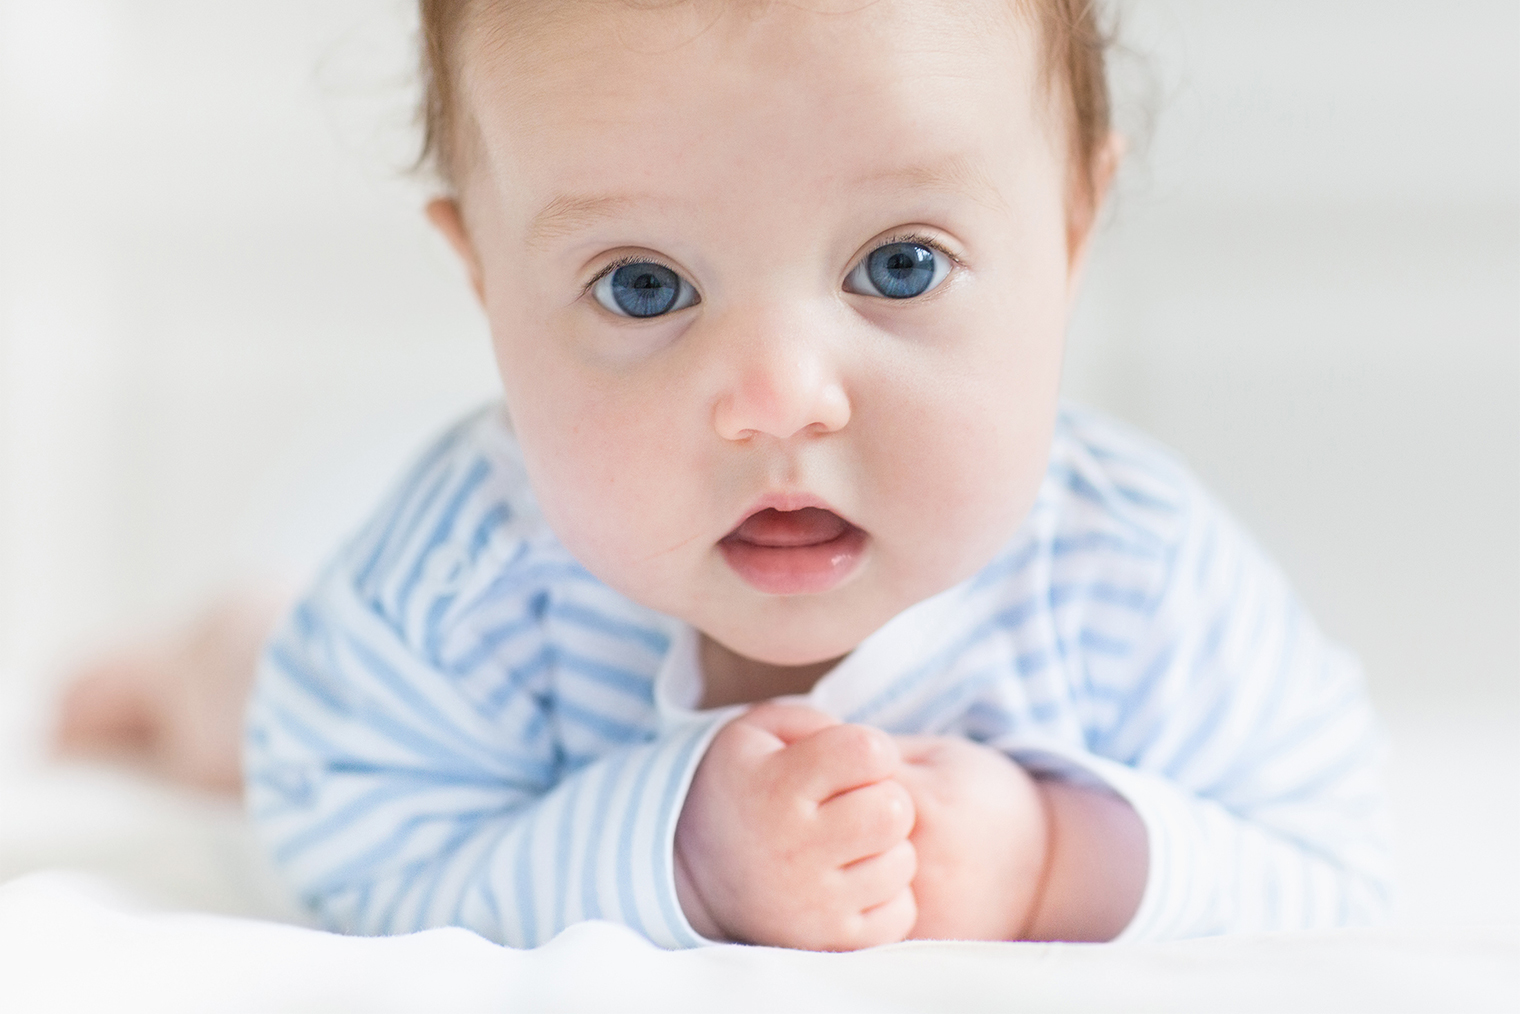 У здорового малыша роговица глаз незамутненная. Источник: FamVeld / Shutterstock